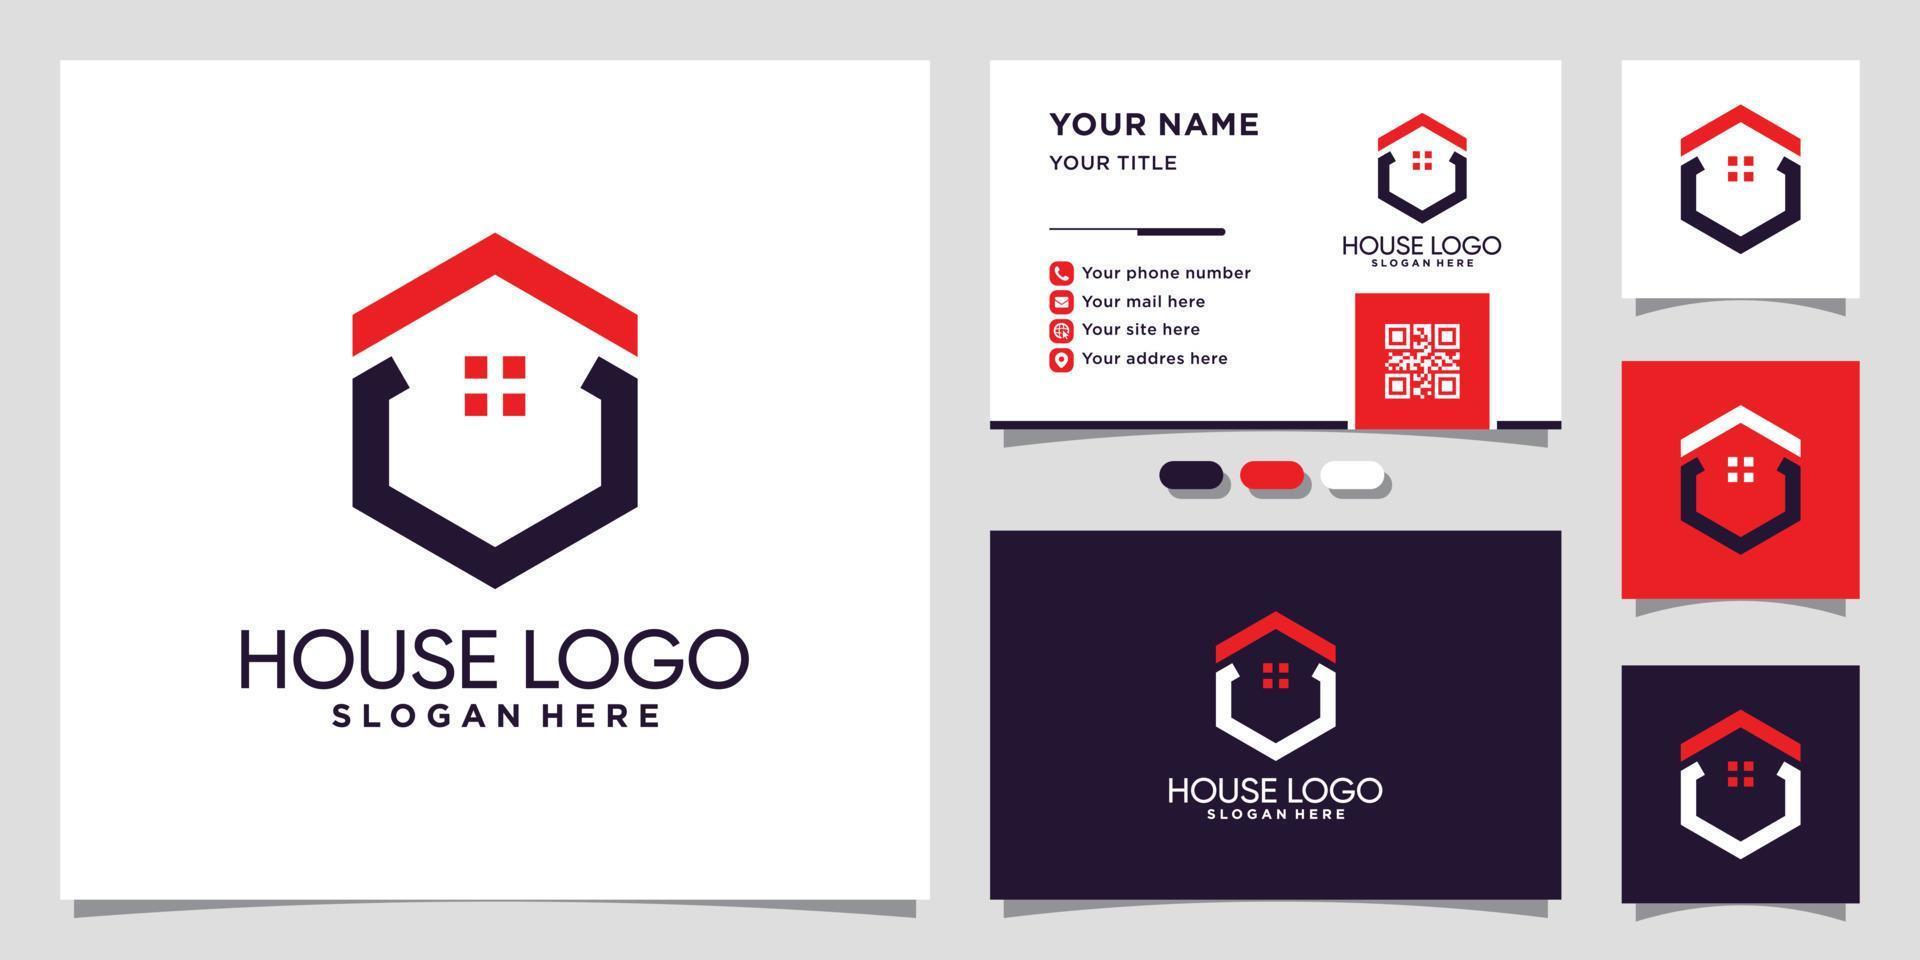 Haus-Logo-Vorlage mit einzigartigem Hexagon-Konzept und Visitenkarten-Design-Premium-Vektor vektor